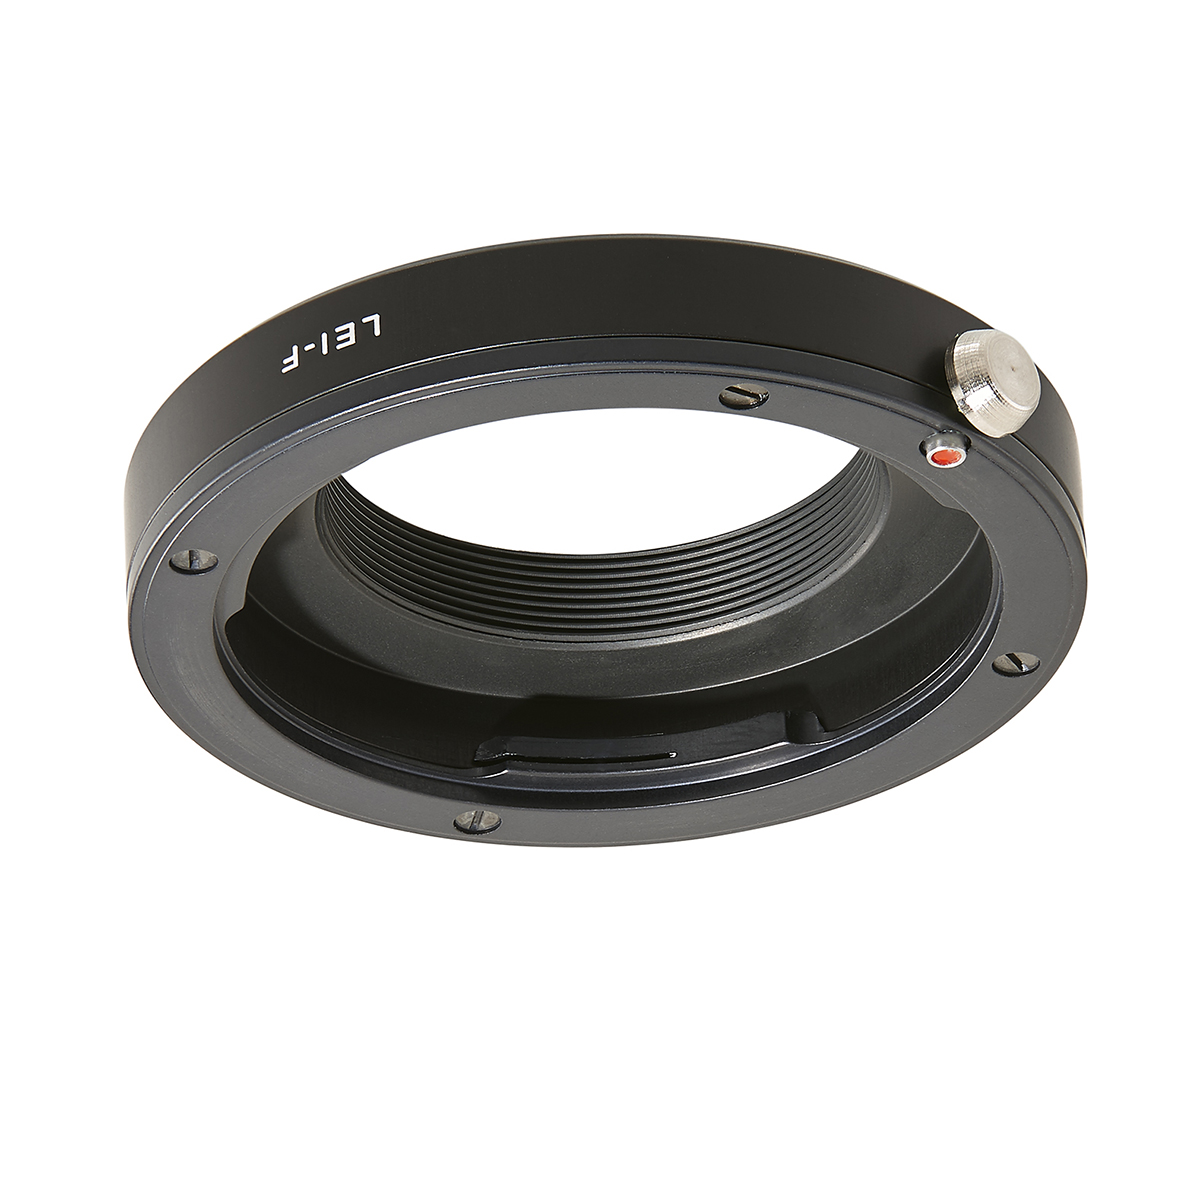 Novoflex Adapter für Leica R/Leicaflex-Objektiv an M39 Gewinde